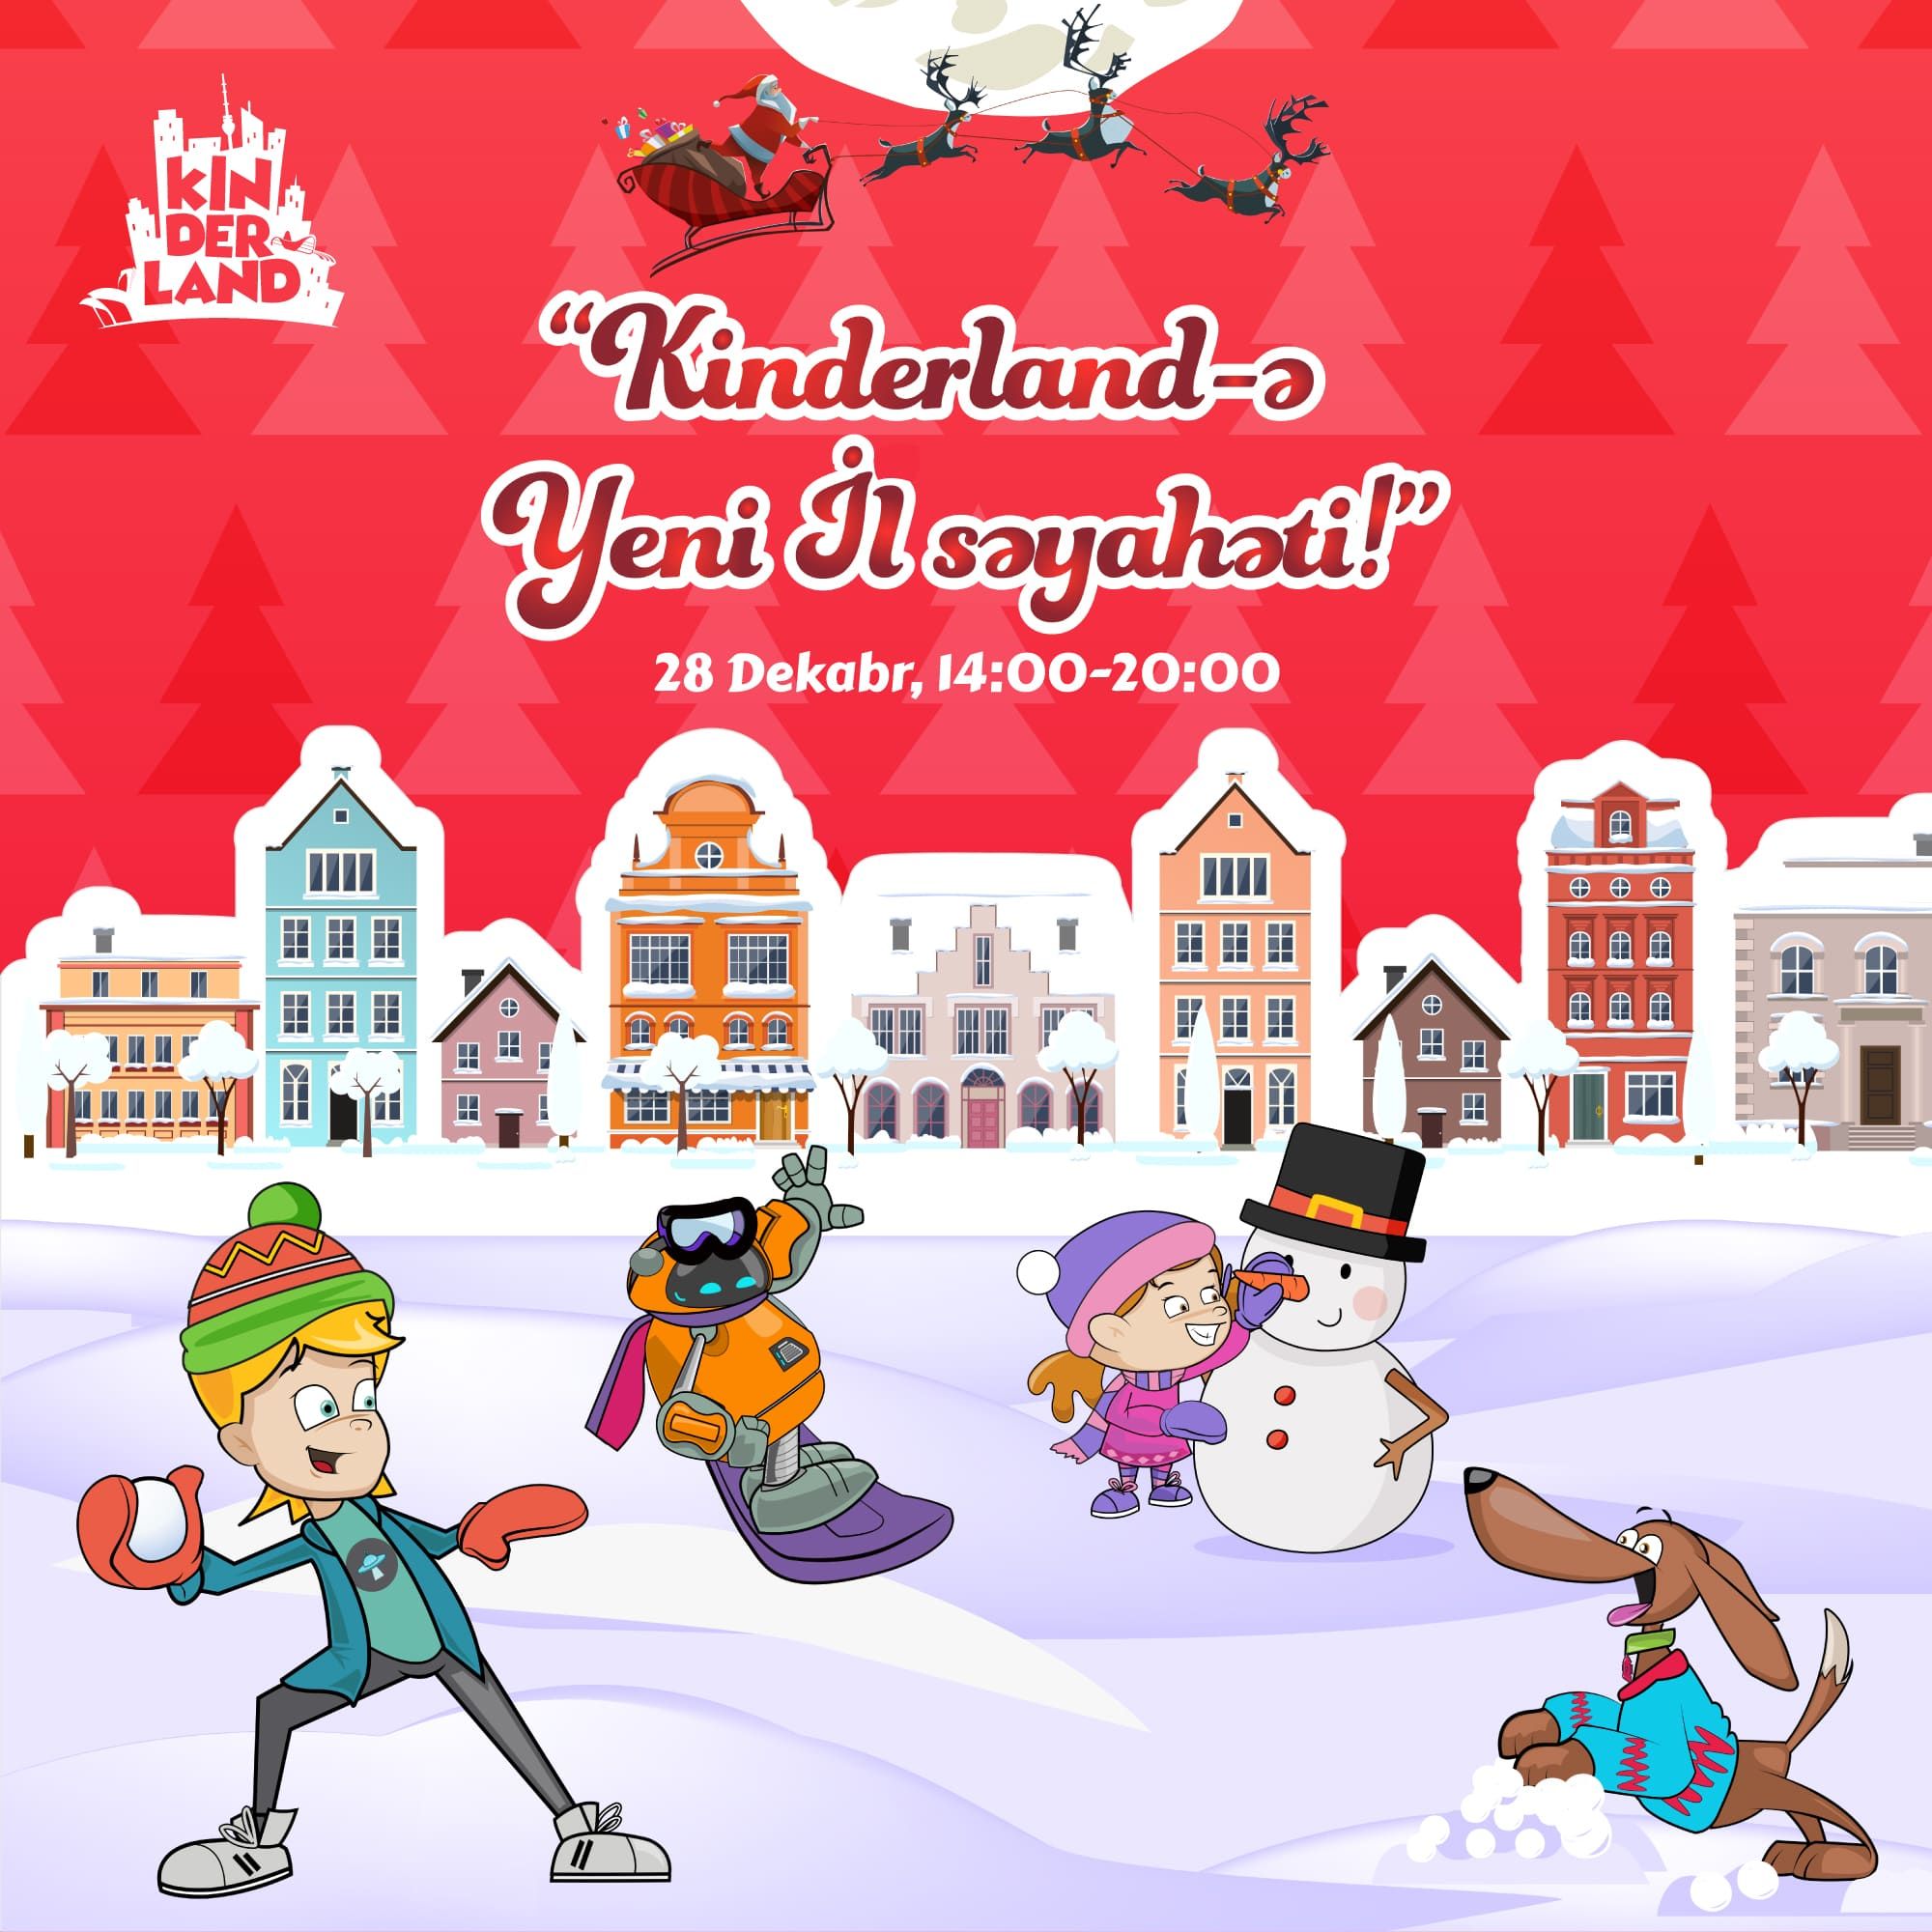 Kinderland-ə Yeni il Səyahəti